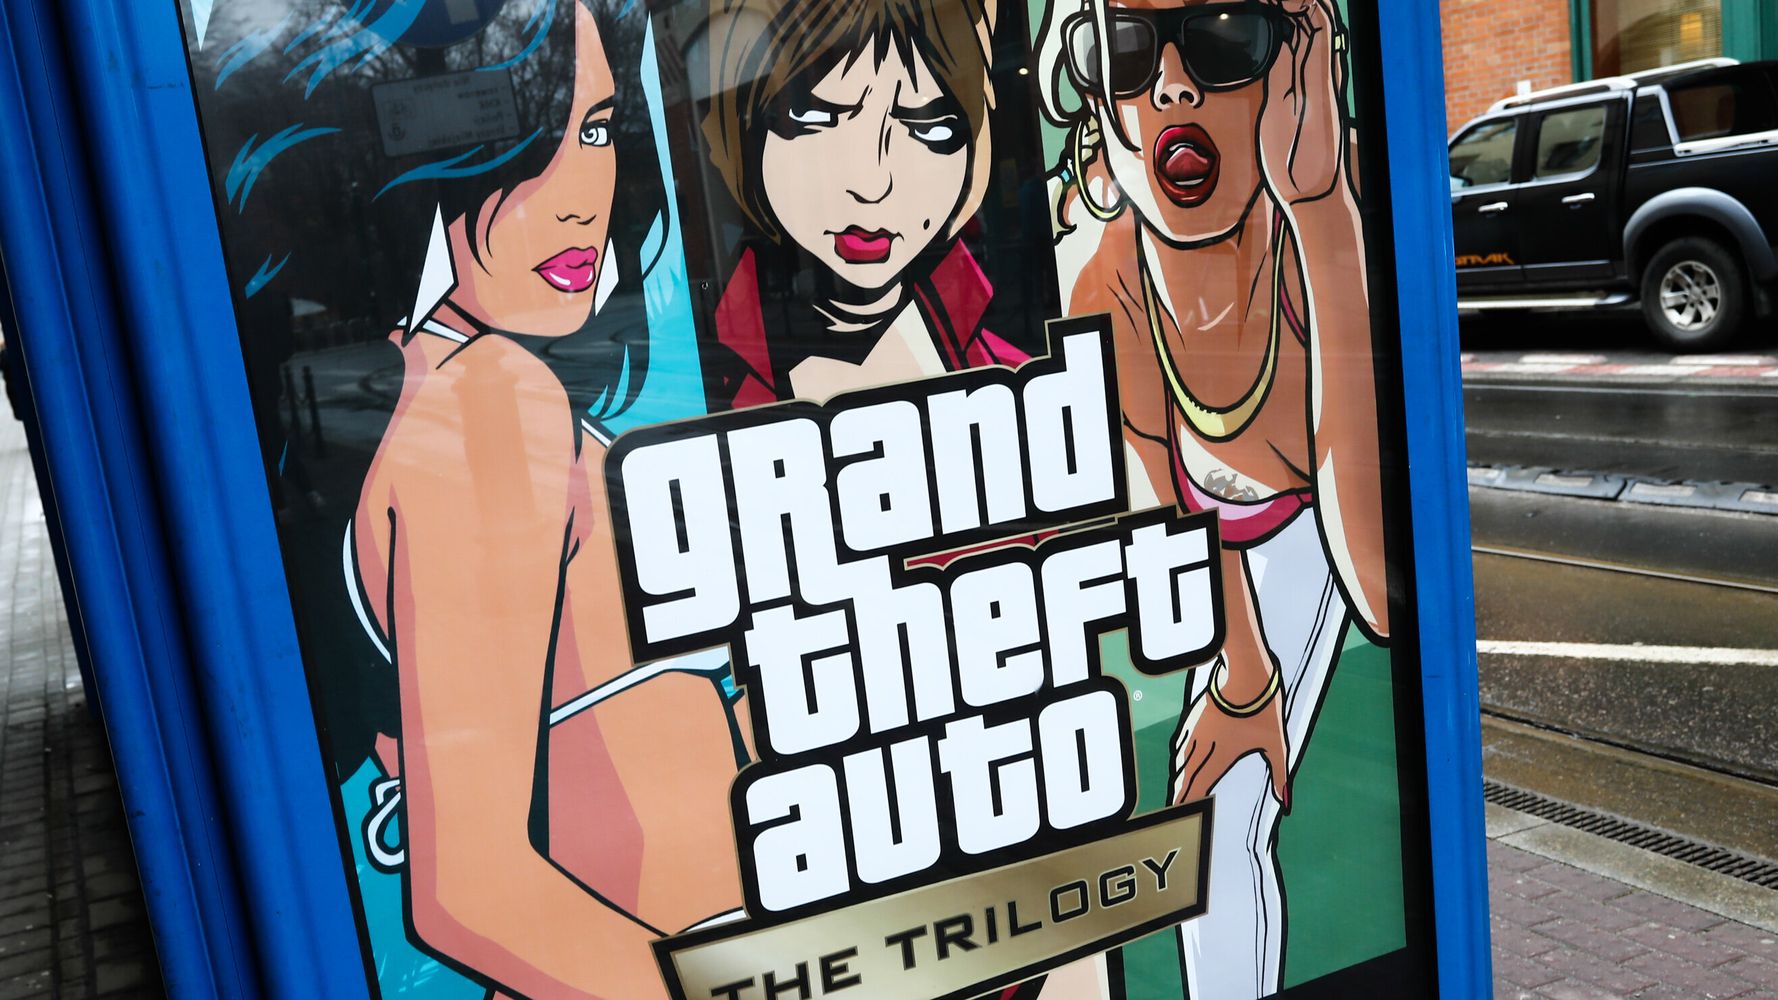 Читать игры мажоров играть в тебя. GTA 6. GTA 6 Trailer girl.